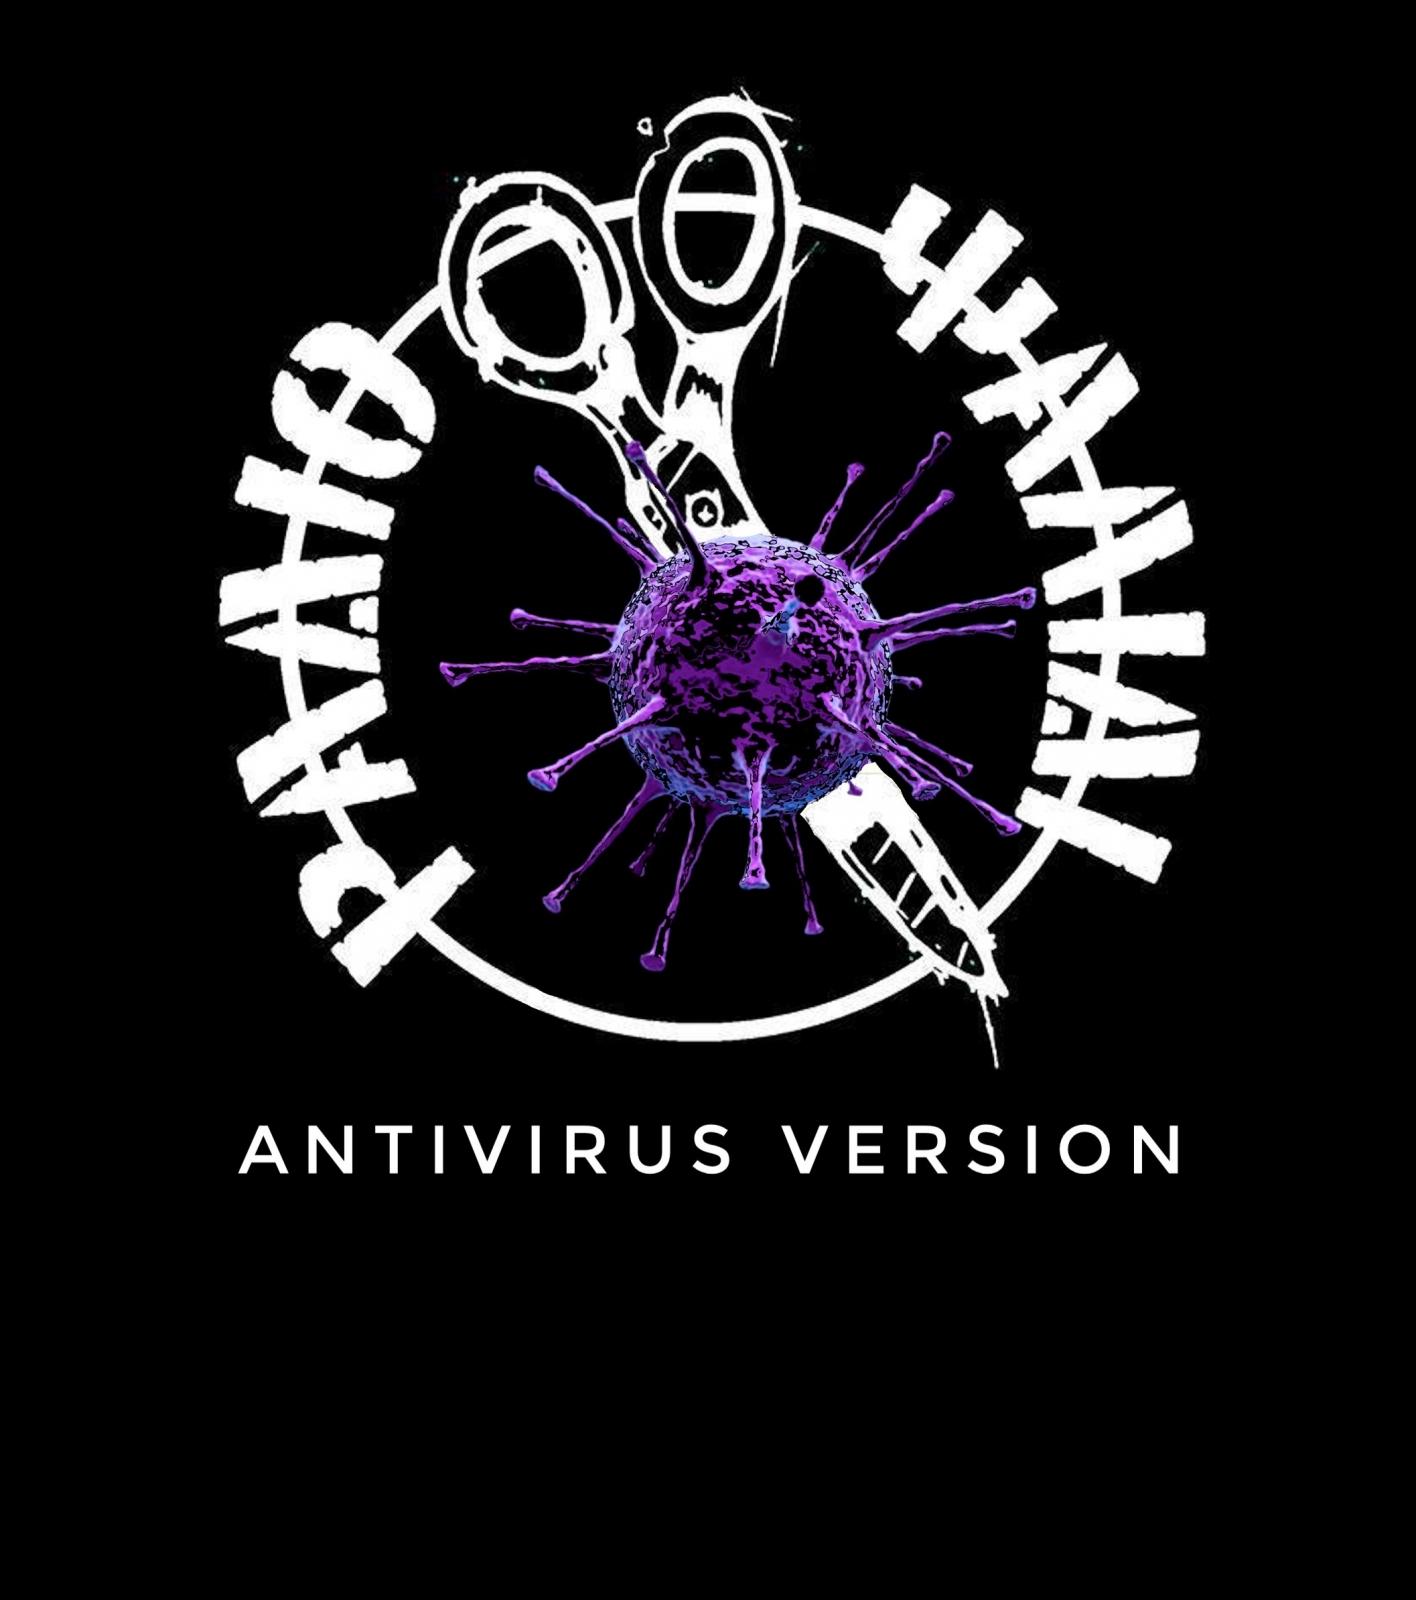 Ράδιο Ψαλίδι Antivirus version: Πρόγραμμα Εβδομάδας 21-26 Απρίλη